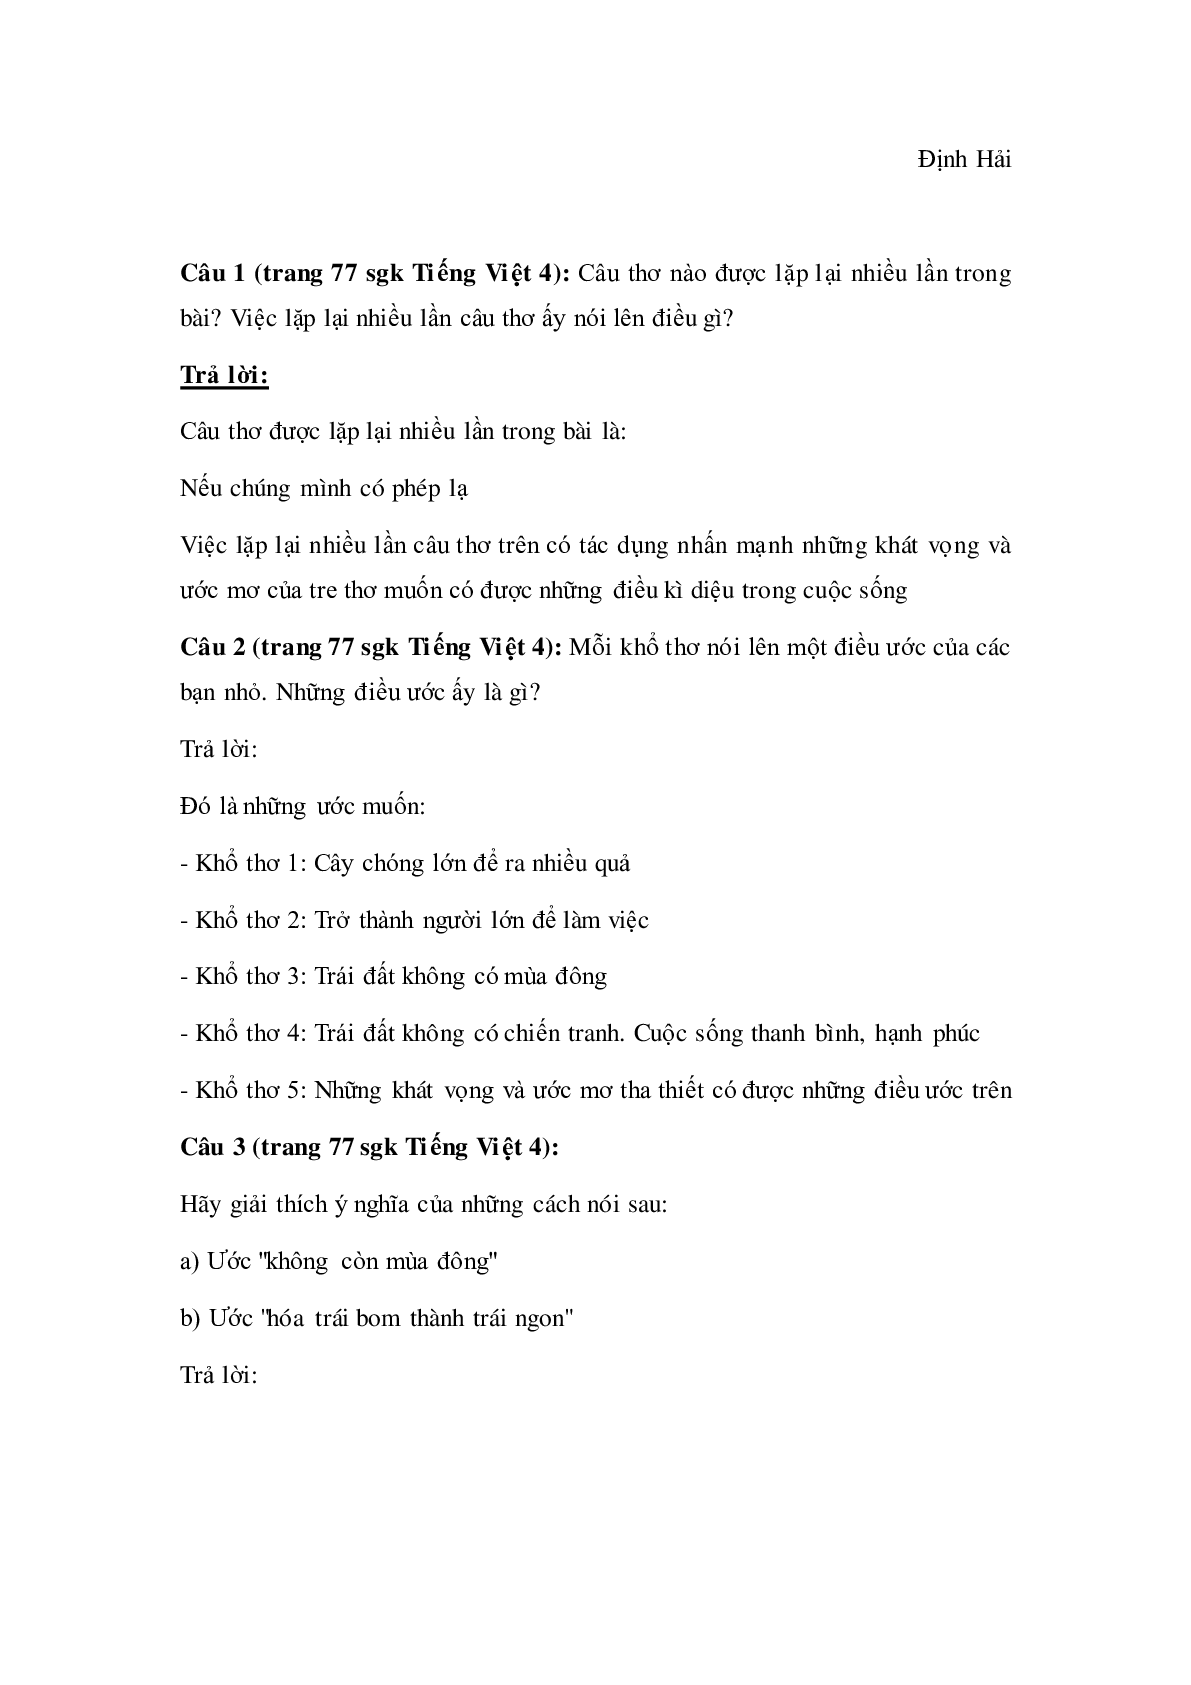 Soạn Tiếng Việt lớp 4: Tập đọc: Nếu chúng mình có phép lạ mới nhất (trang 2)